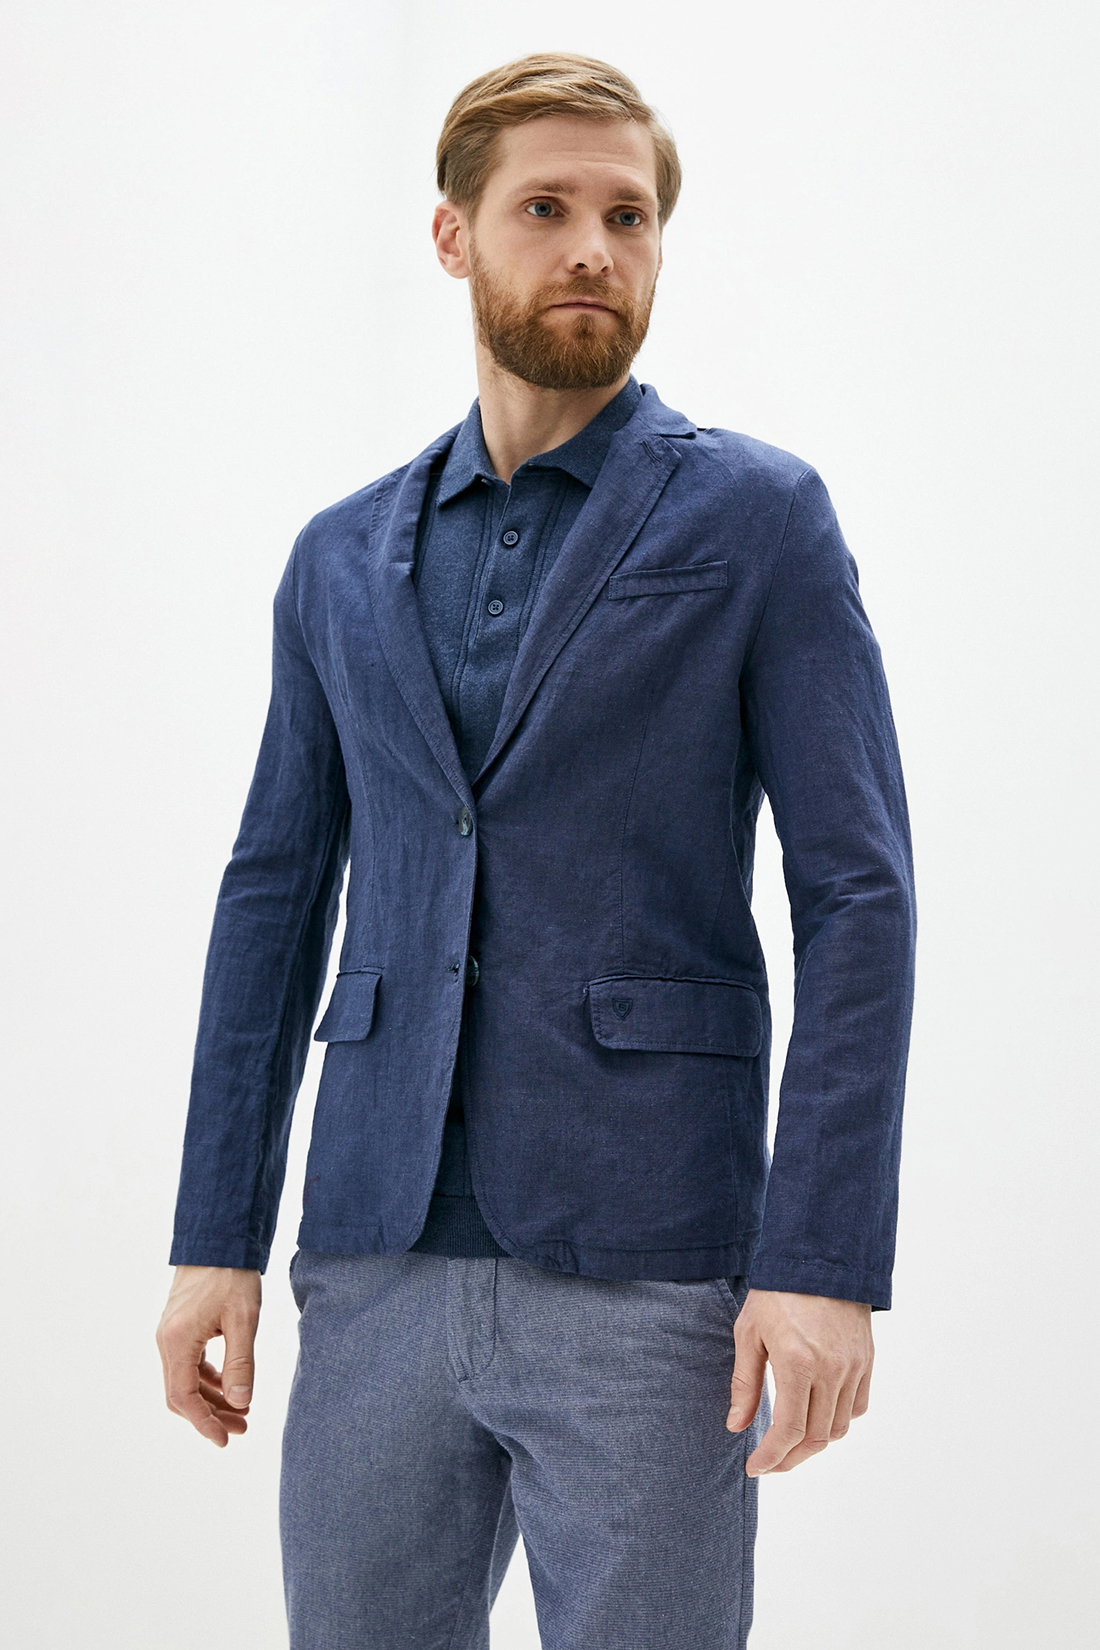 Льняной пиджак (арт. baon B620004), размер XXL, цвет deep navy melange#синий